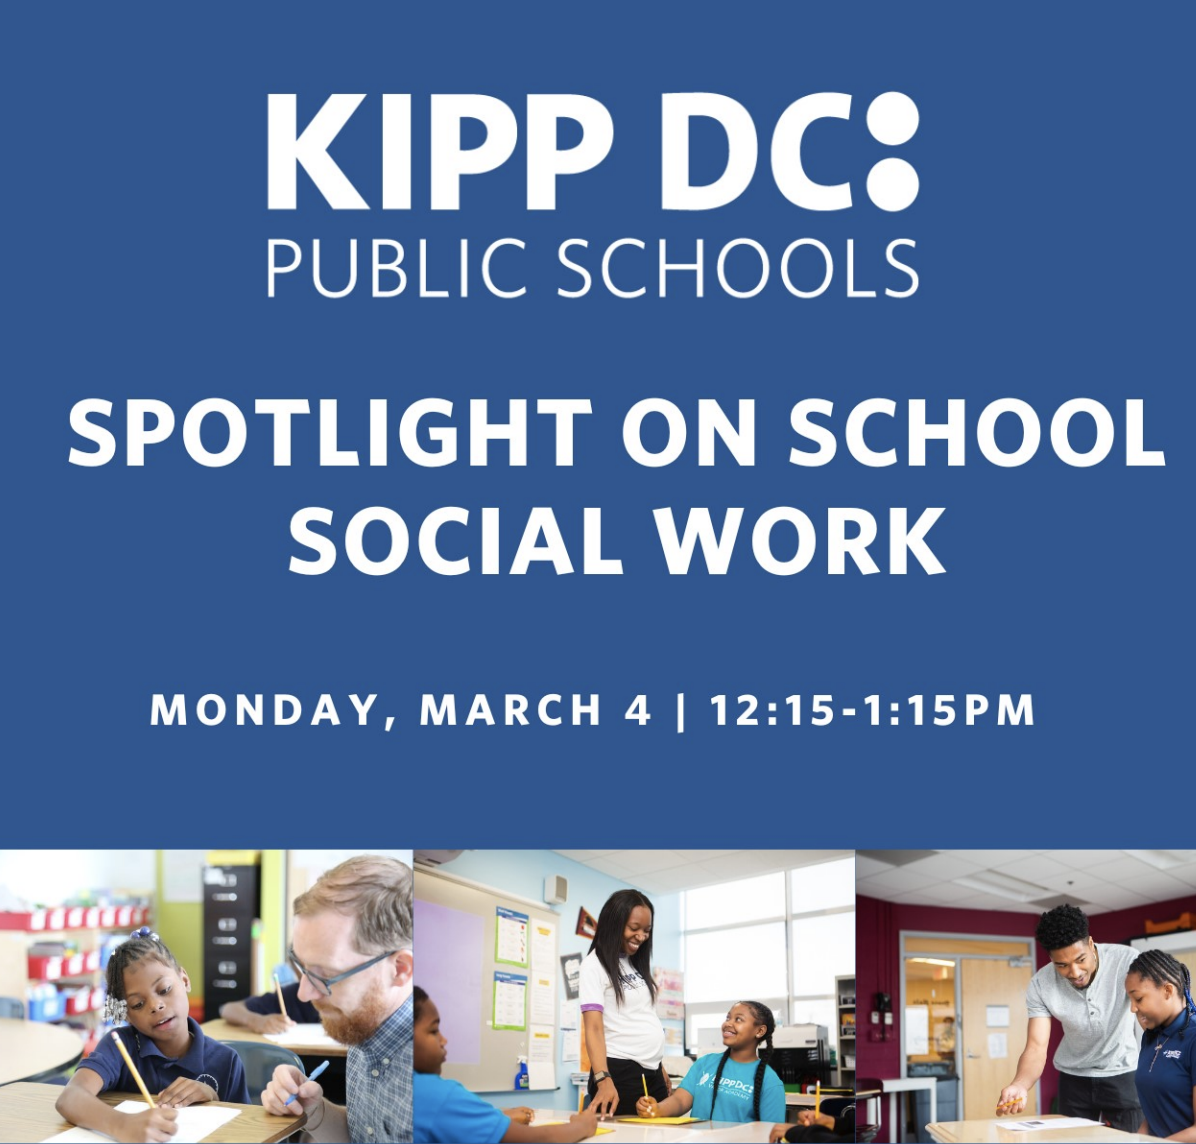 KIPP DC Public Schools Mental Health Team